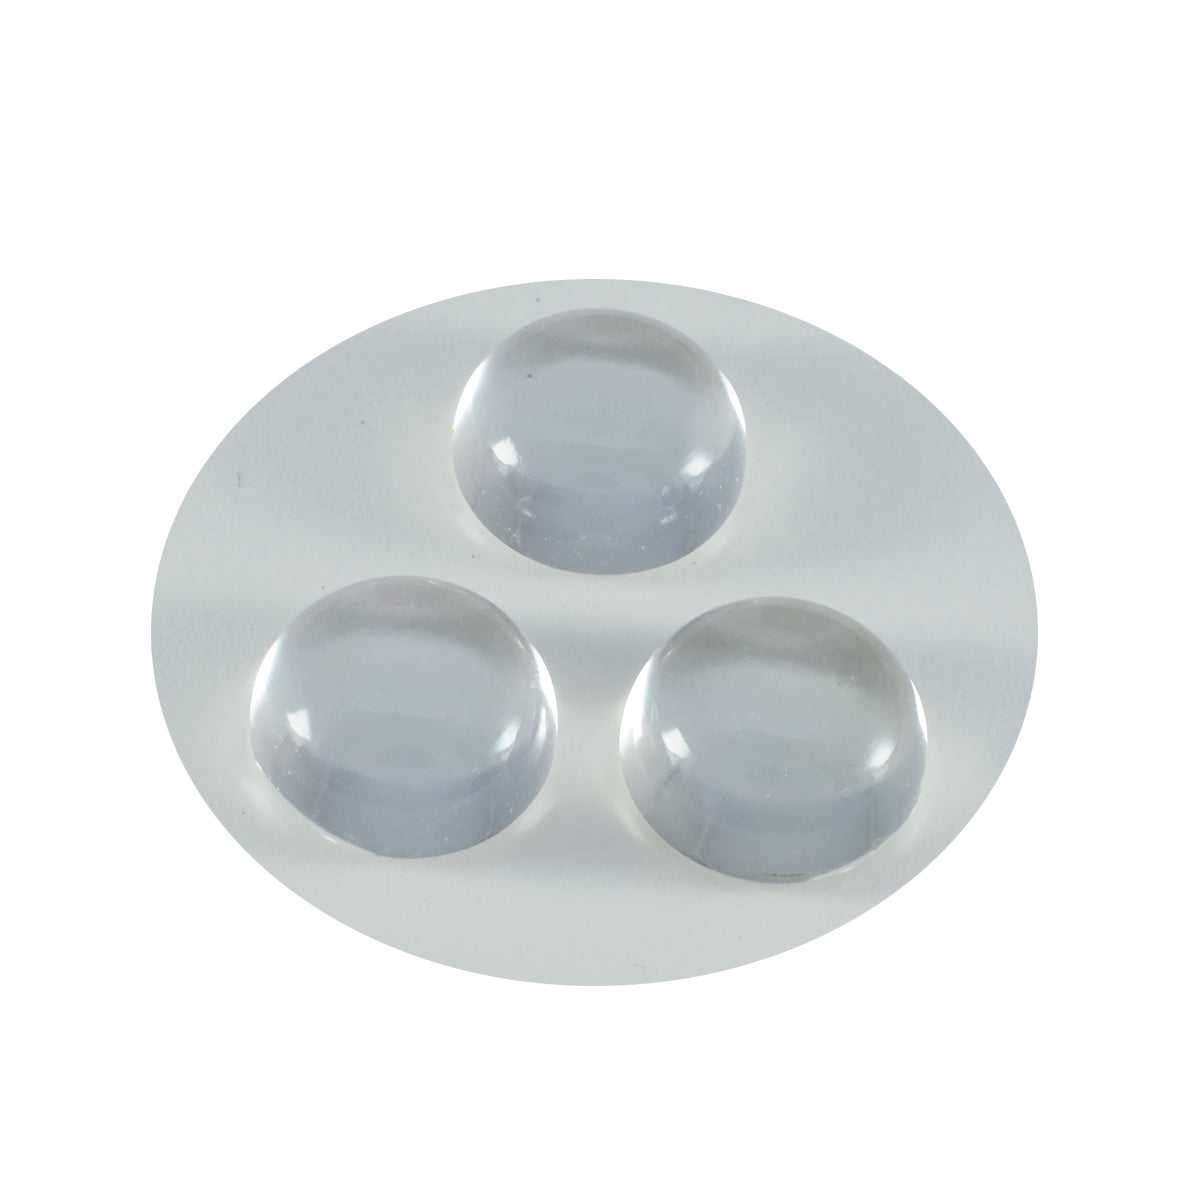 riyogems 1pc cabochon di quarzo di cristallo bianco 11x11 mm forma rotonda gemma sciolta di bella qualità